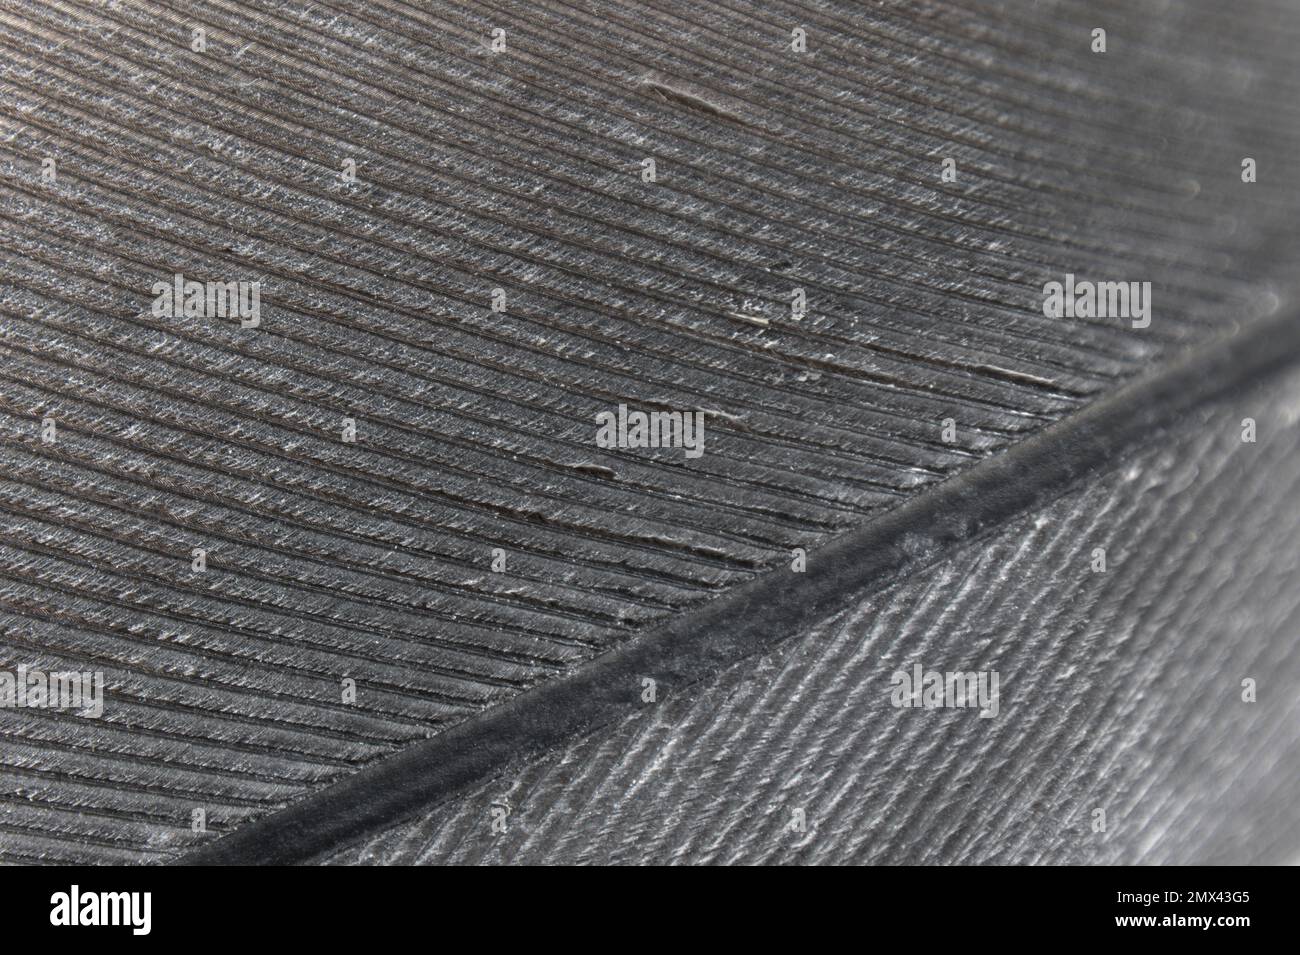 Macro de remplissage d'image prise d'une partie de la plume d'un perroquet gris. Agrandissement élevé Banque D'Images